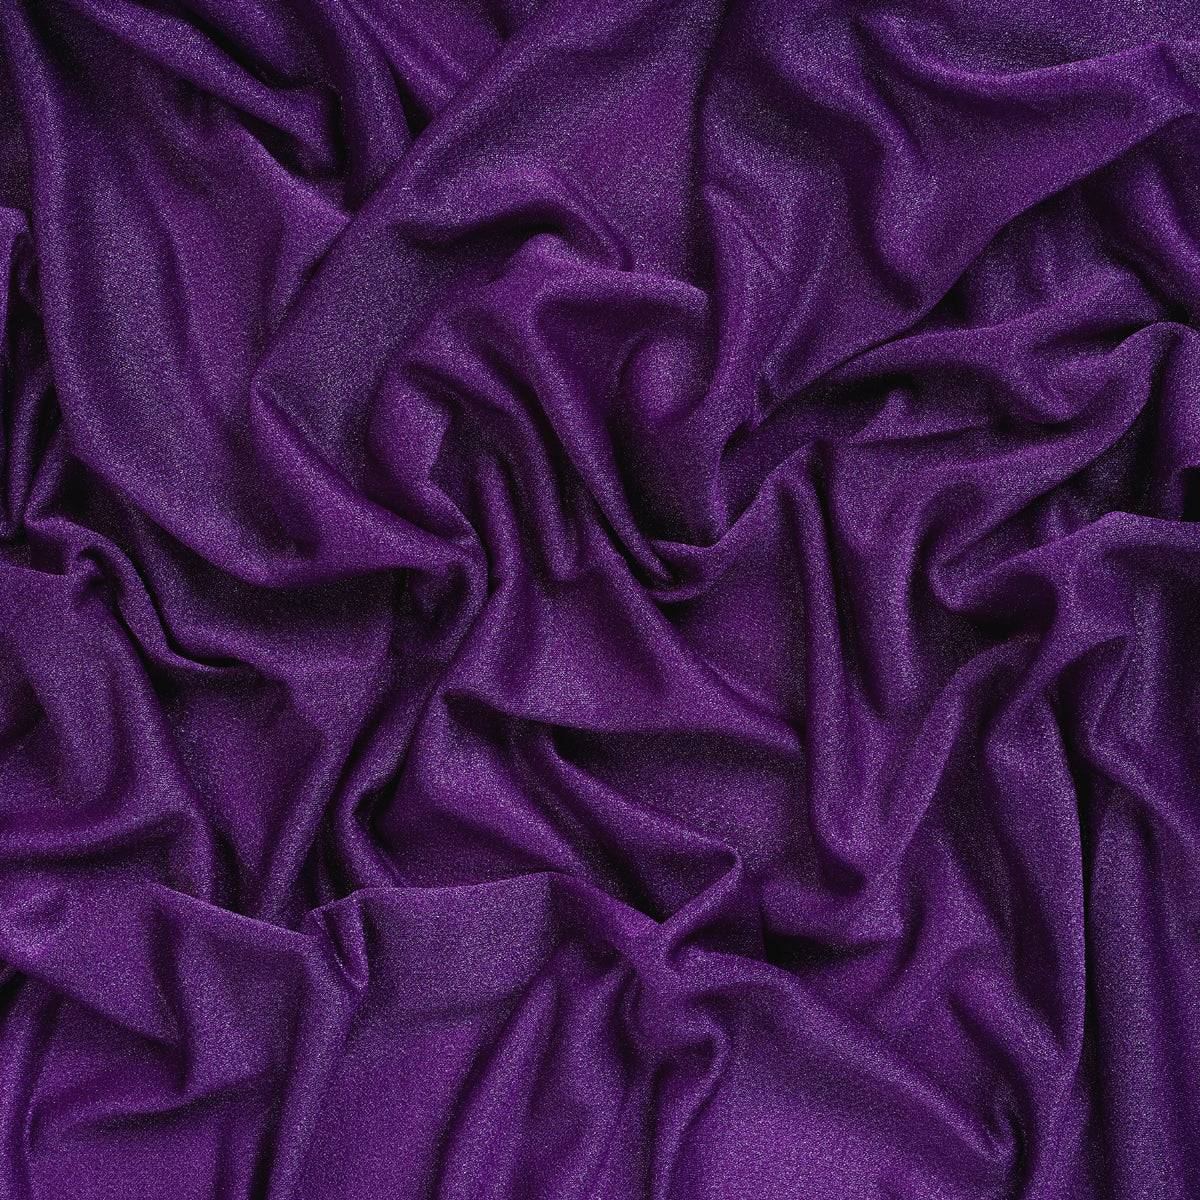 Purple,c1ef548a-8b5d-41f4-8954-90b30a4c5084